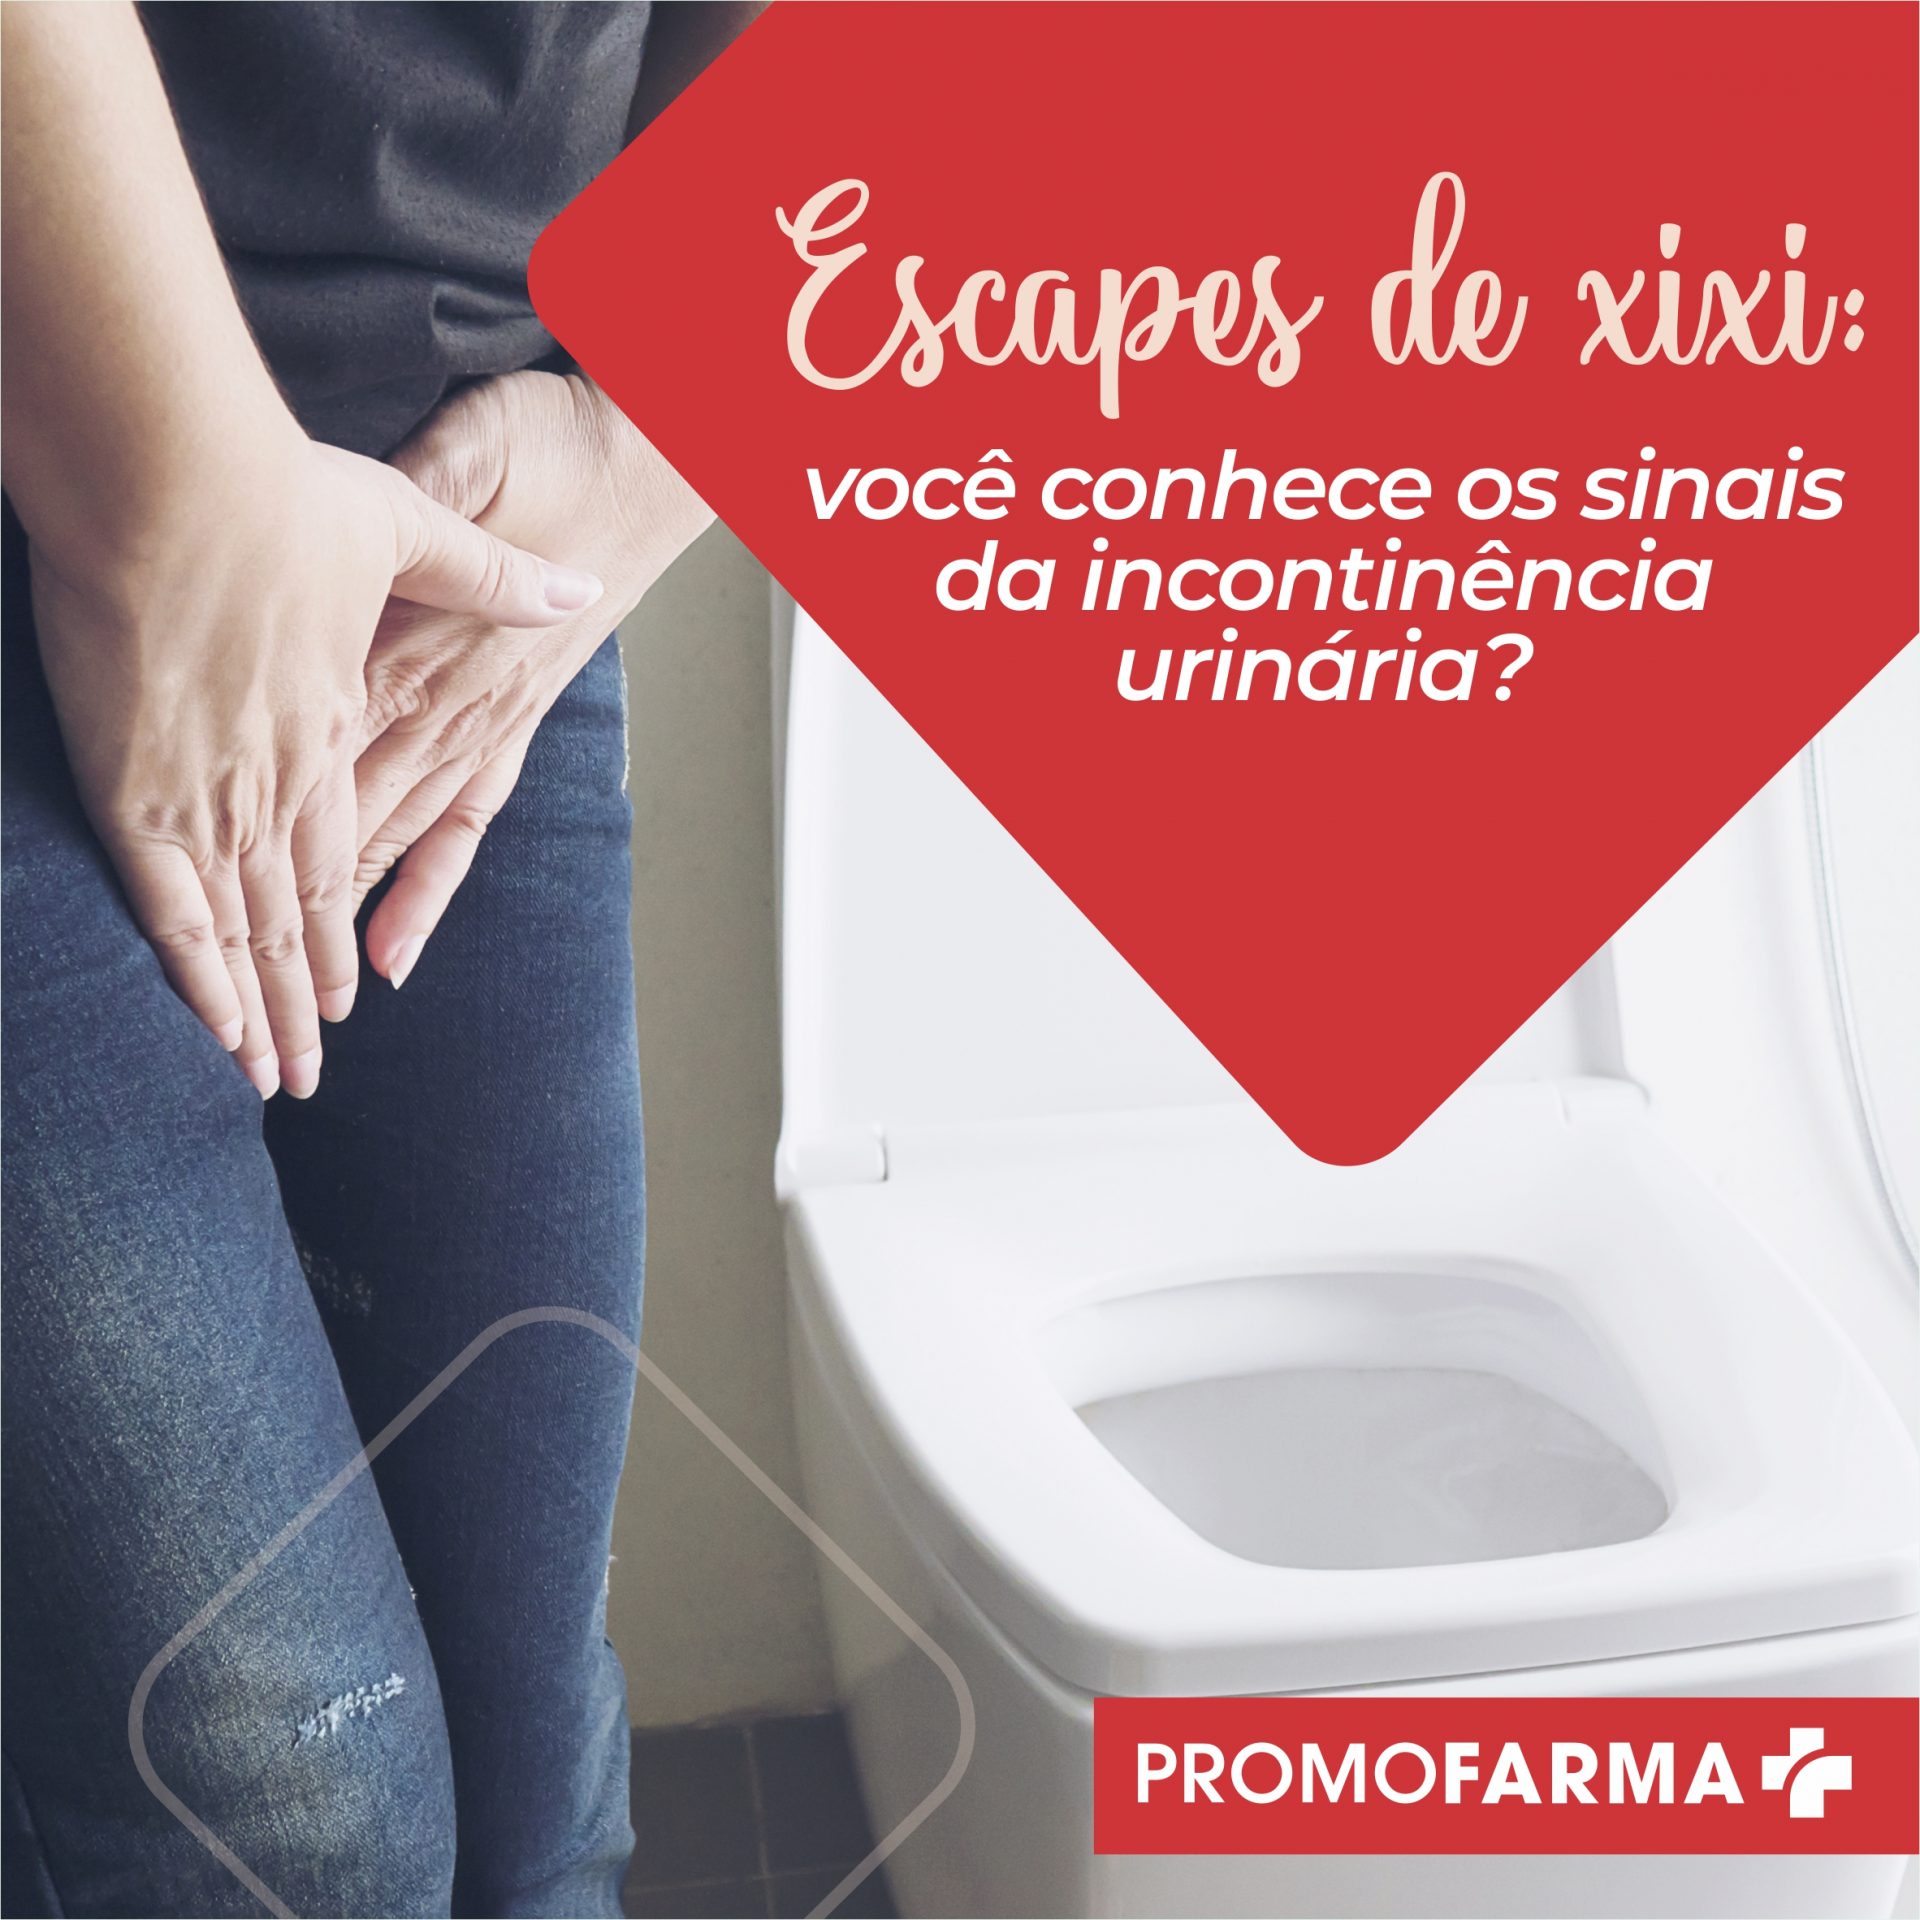 Escapes de xixi: você conhece os sinais da incontinência urinária?